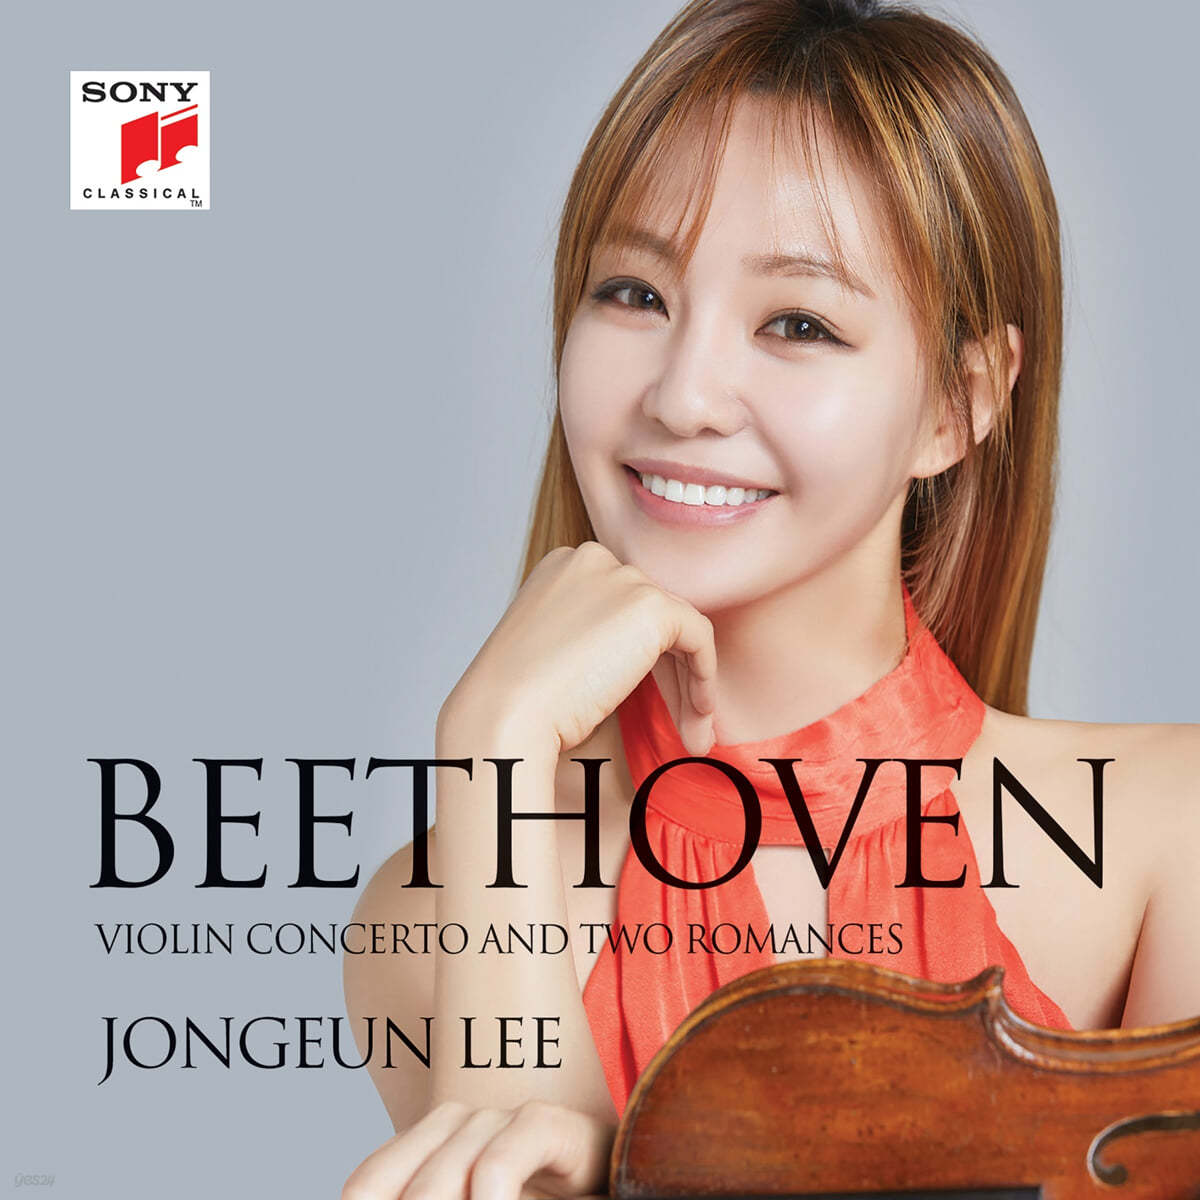 이종은 - 베토벤: 바이올린 협주곡 (Beethoven: Violin Concerto)